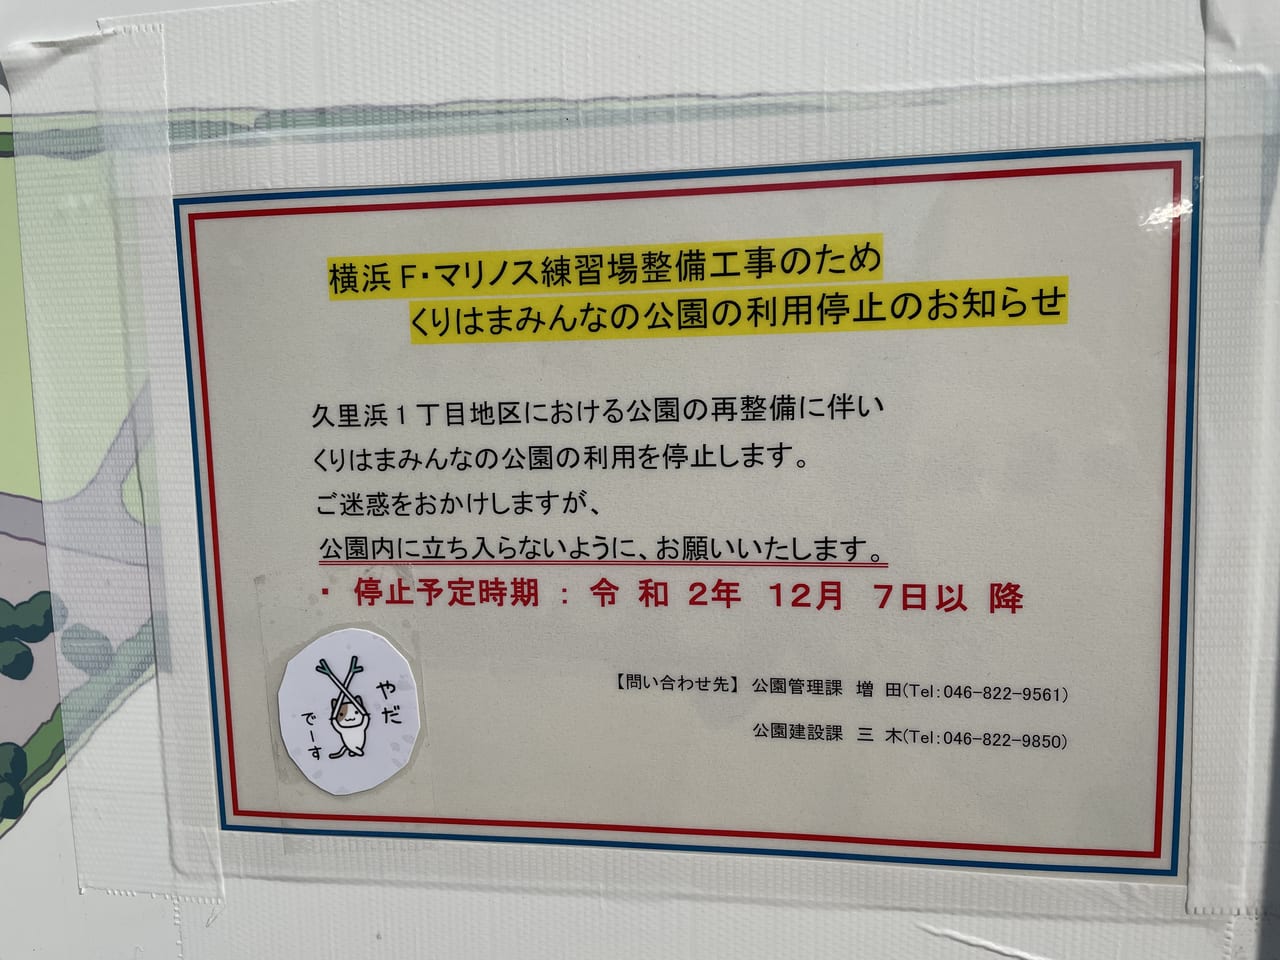 横須賀市 くりはまみんな公園 が12月7日以降利用停止になるそうです 号外net 横須賀市 三浦市